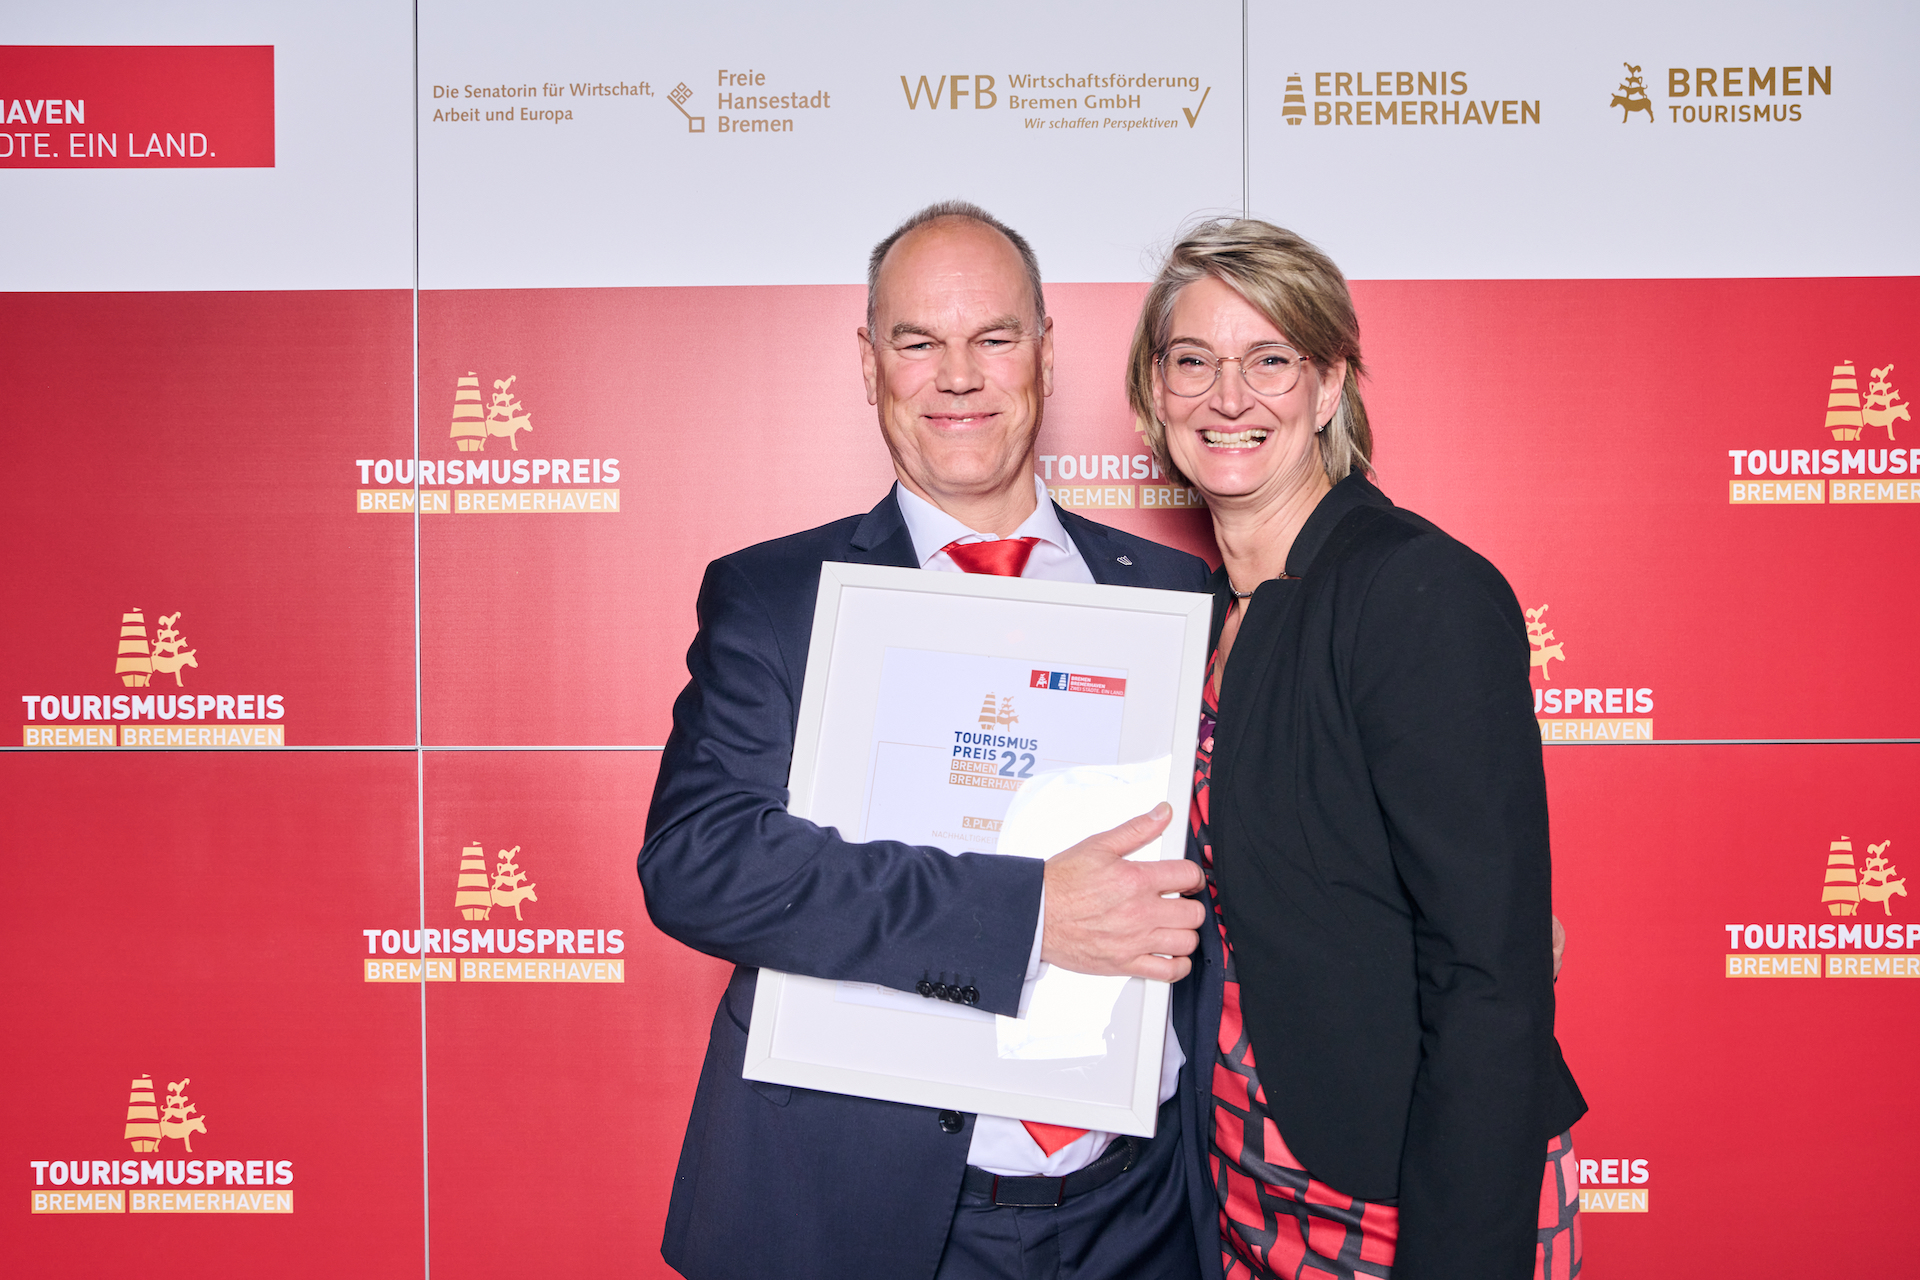 Zwei Personen stehen vor einem roten Hintergrund mit Logos des Tourismuspreises 2022. Eine hält eine Urkunde im Arm